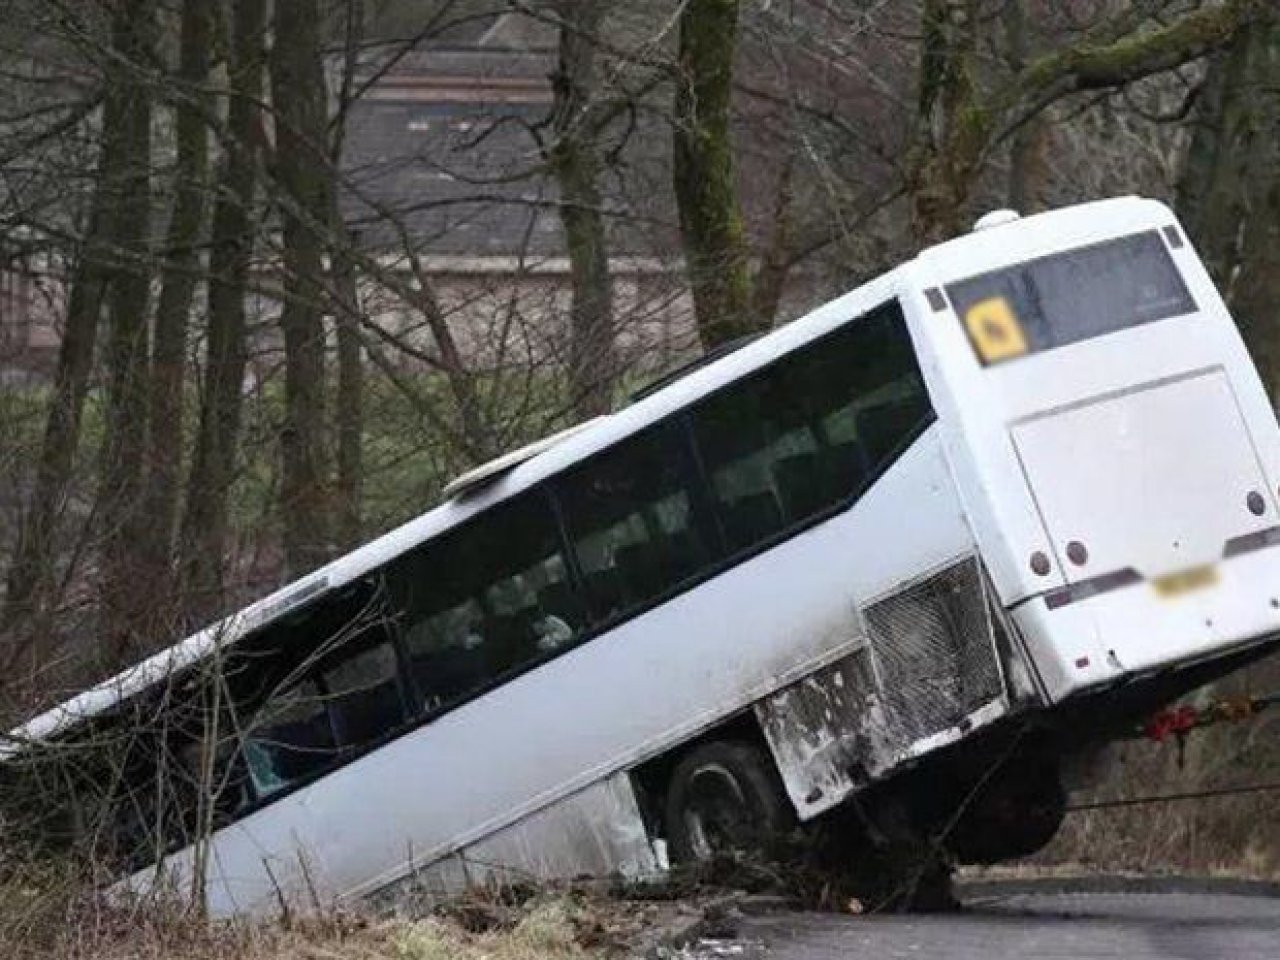 SON DƏQİQƏ! Qobustanda avtobus aşdı - 2 ölü, 6 yaralı - FOTO